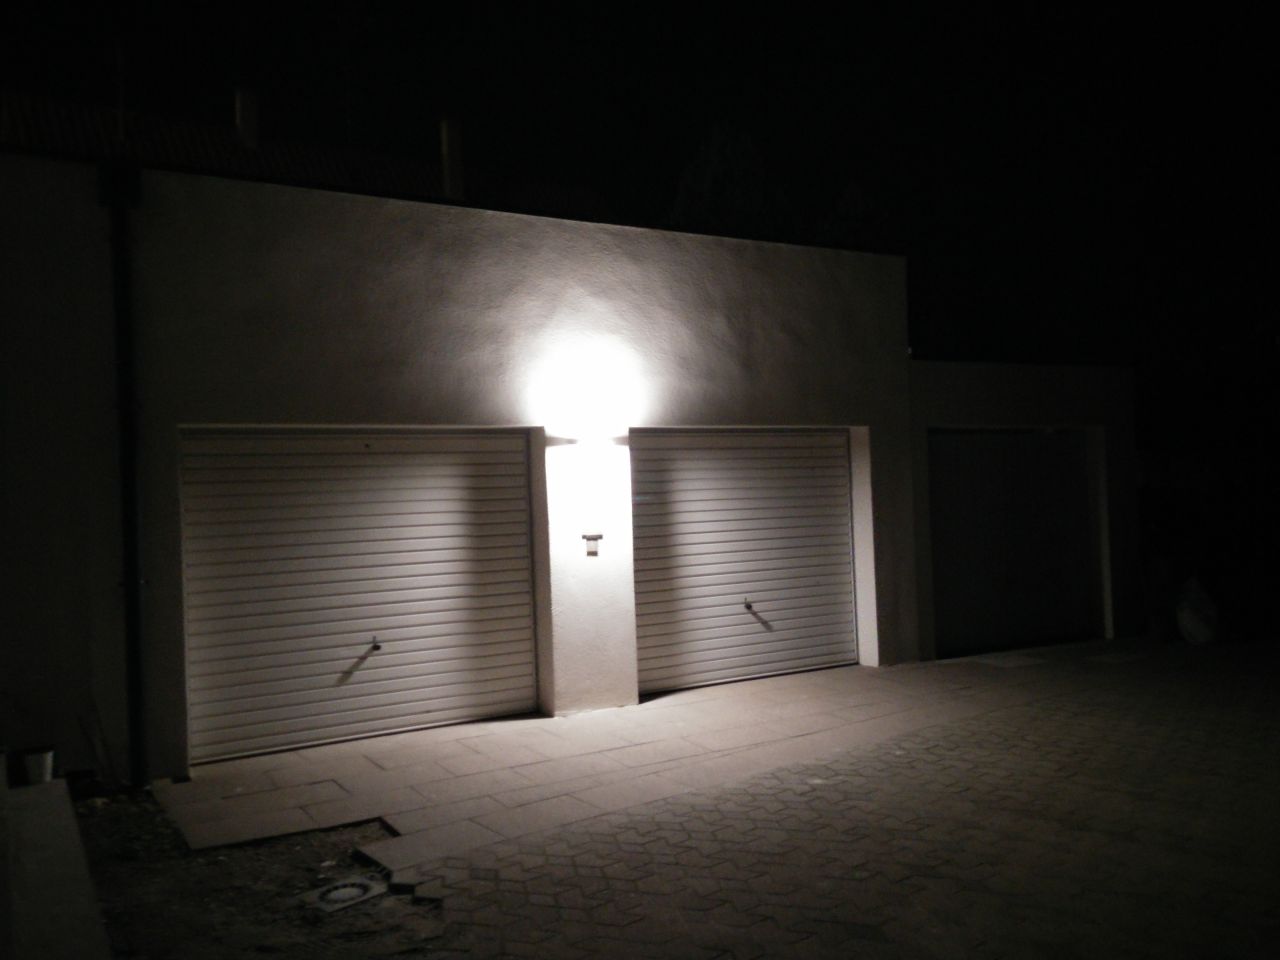 Appplique Steinel i820 LED iHF installe au niveau des garages